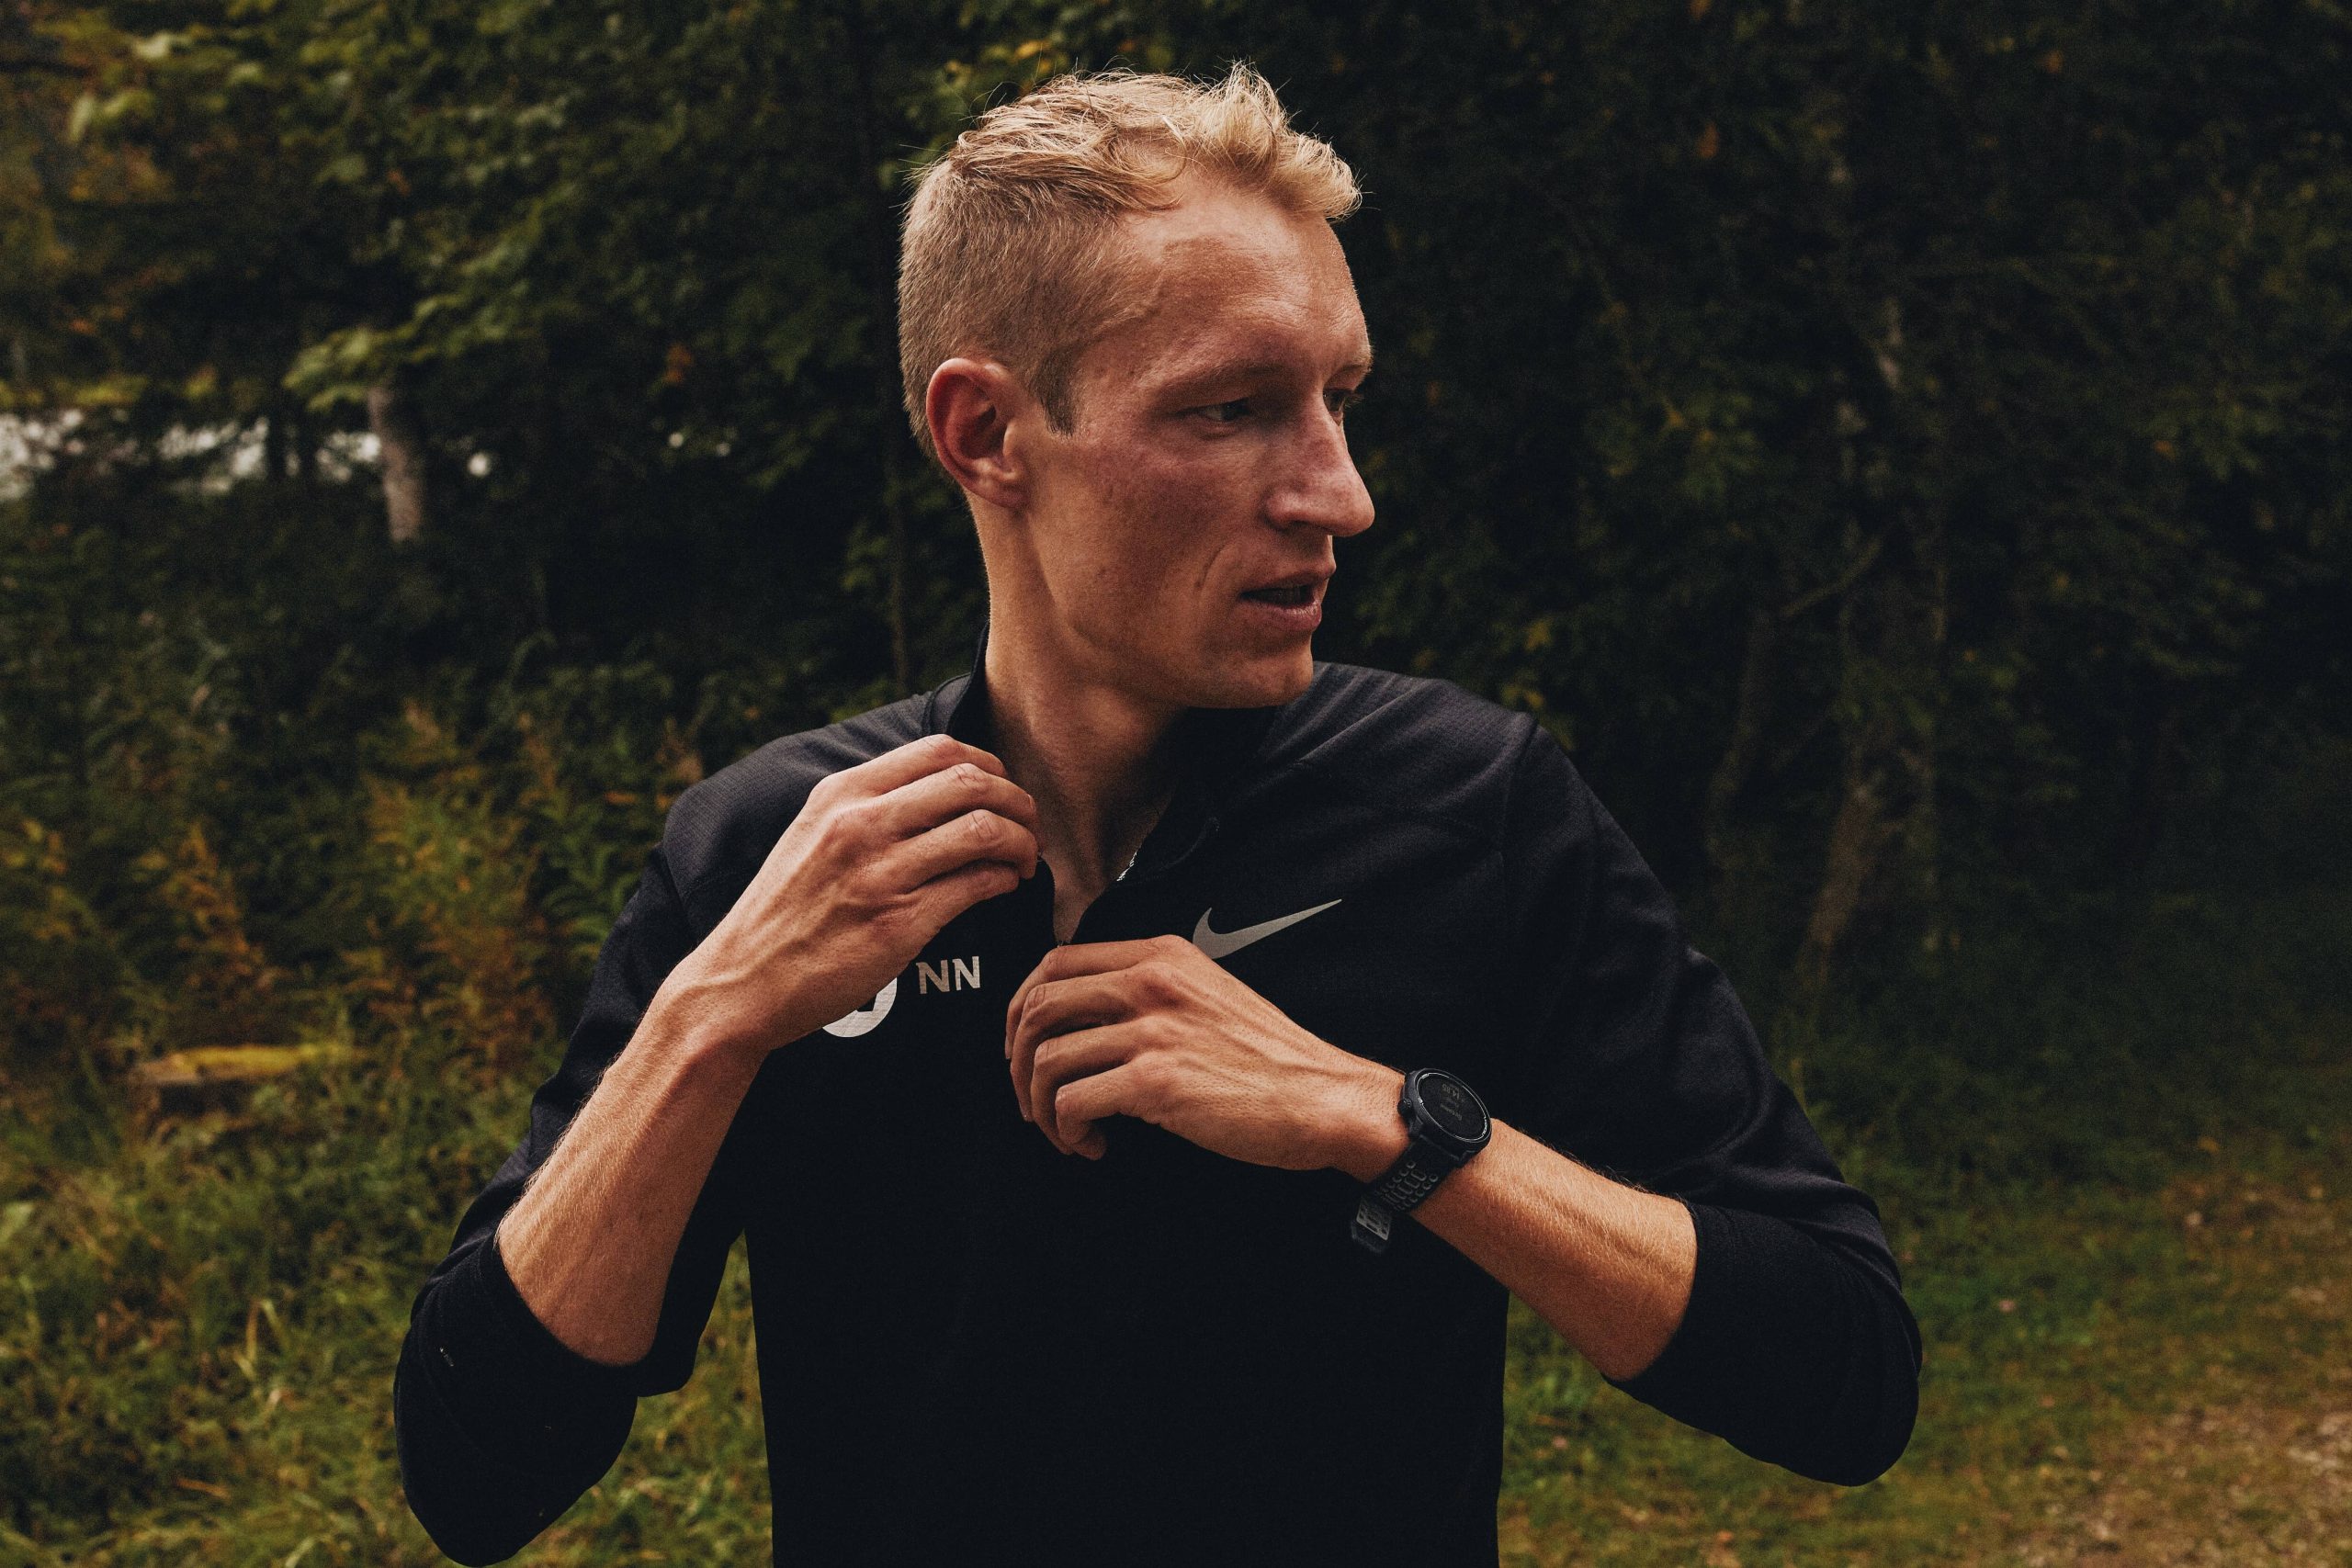 Björn Koreman, maratoneta, con indosso un top nero Nike, guarda lontano dall'obiettivo con un orologio sportivo al polso.